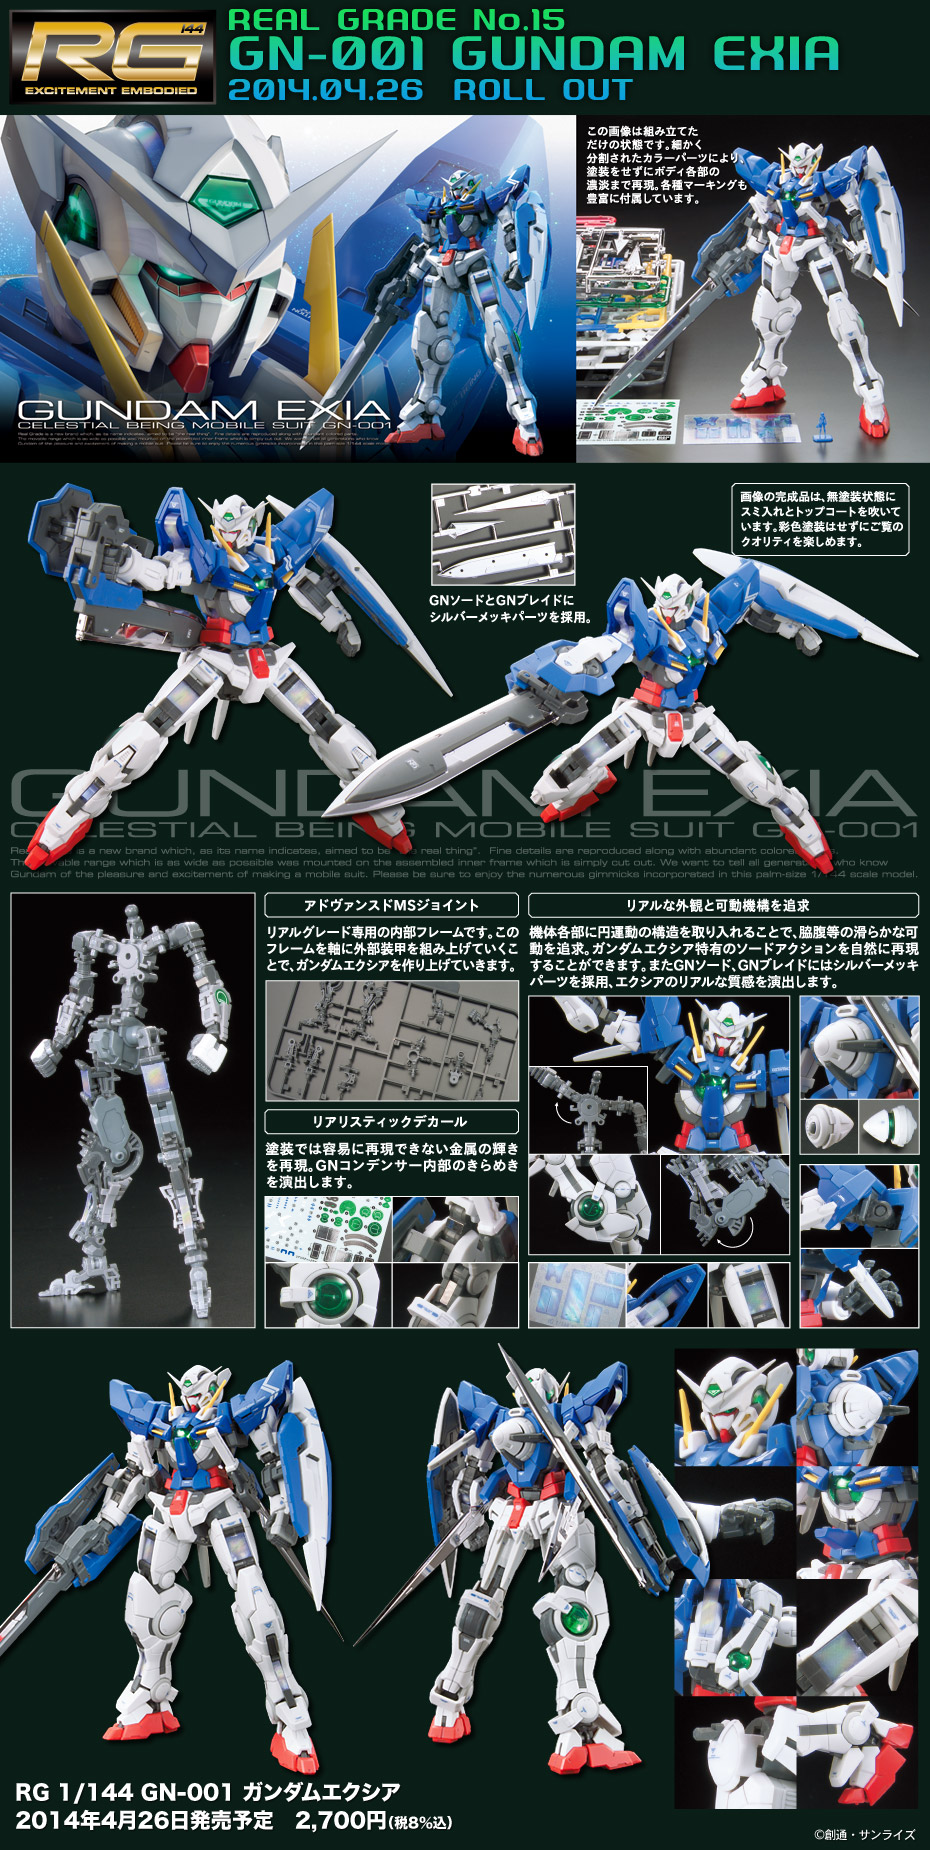 Rg 1 144 Gn 001 Gundam Exia Update Wallpaper Size Images Info Gunjap